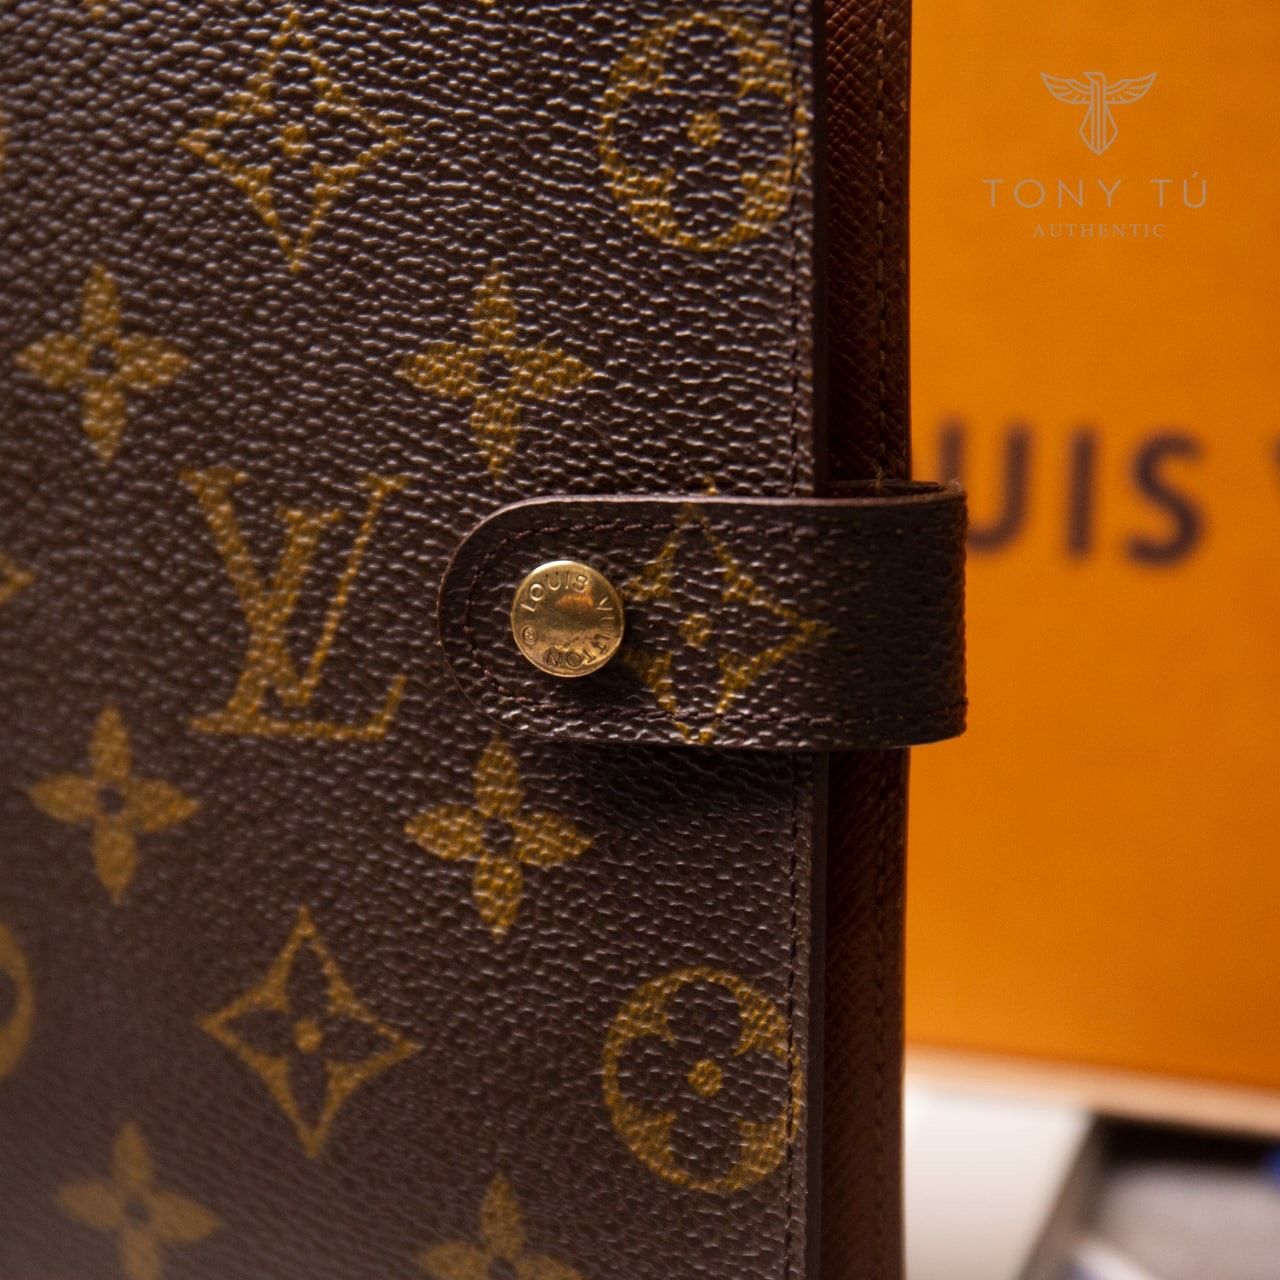 Túi Louis Vuitton Petite Malle East West Bag like Authentic   Shoptuihanghieucom